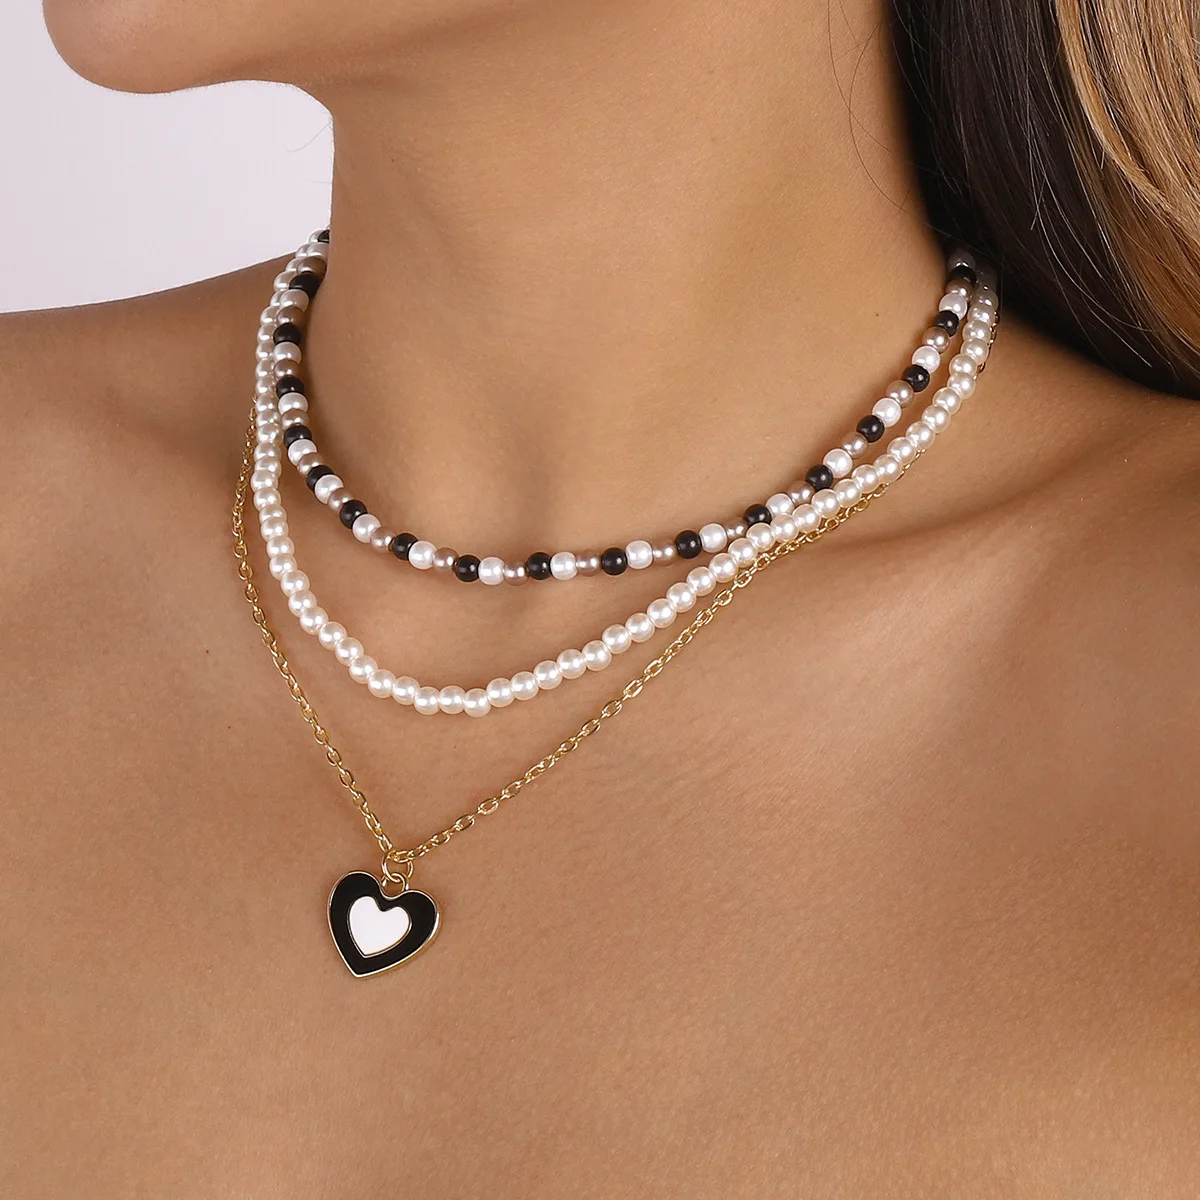 

Цепочка с подвеской в виде сердца Женская, многослойное ожерелье из металла под жемчуг, бисер, до ключицы, Модная бижутерия, 2022